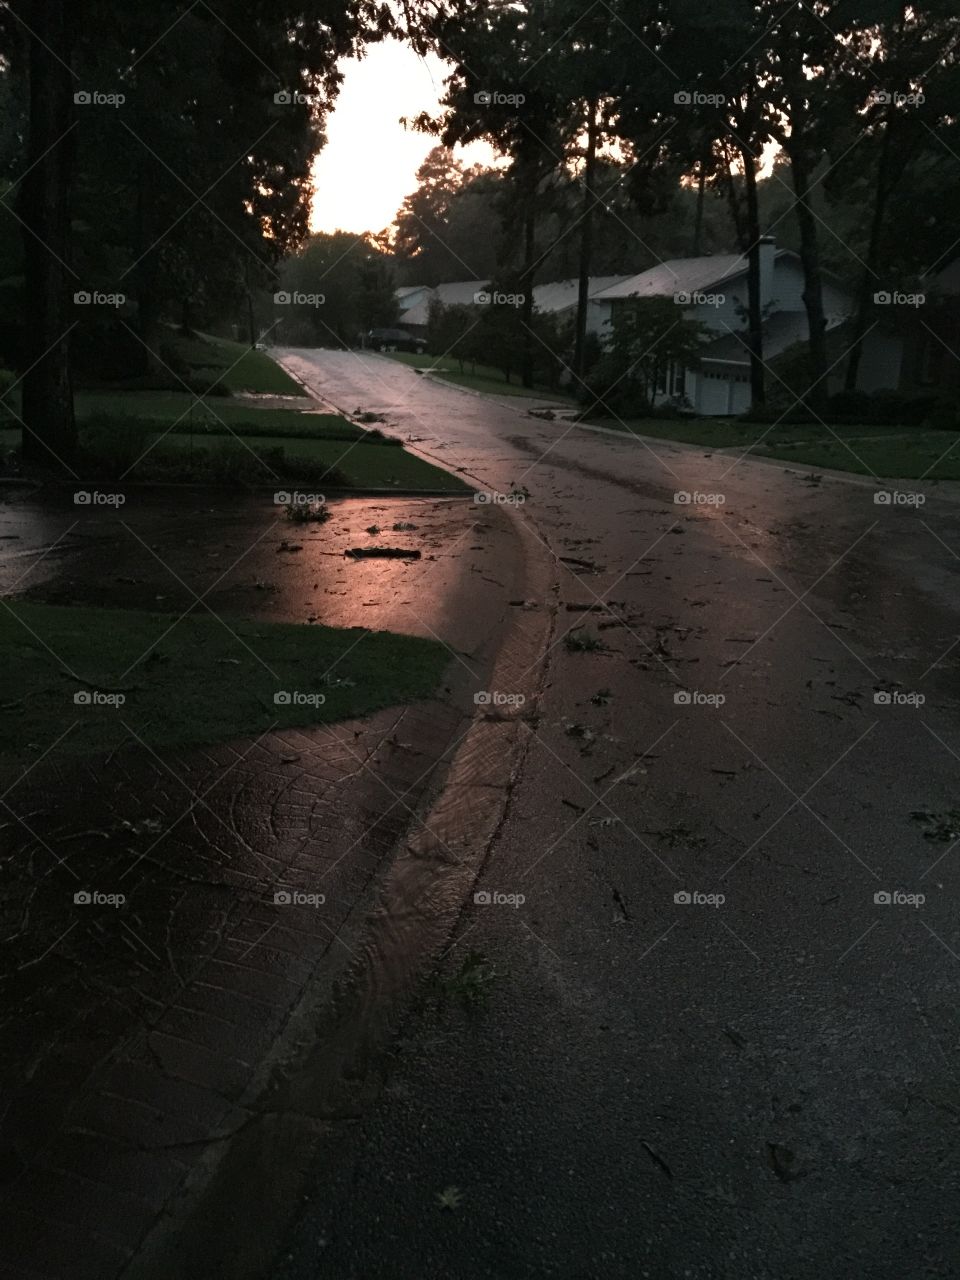 My Street After a Rain